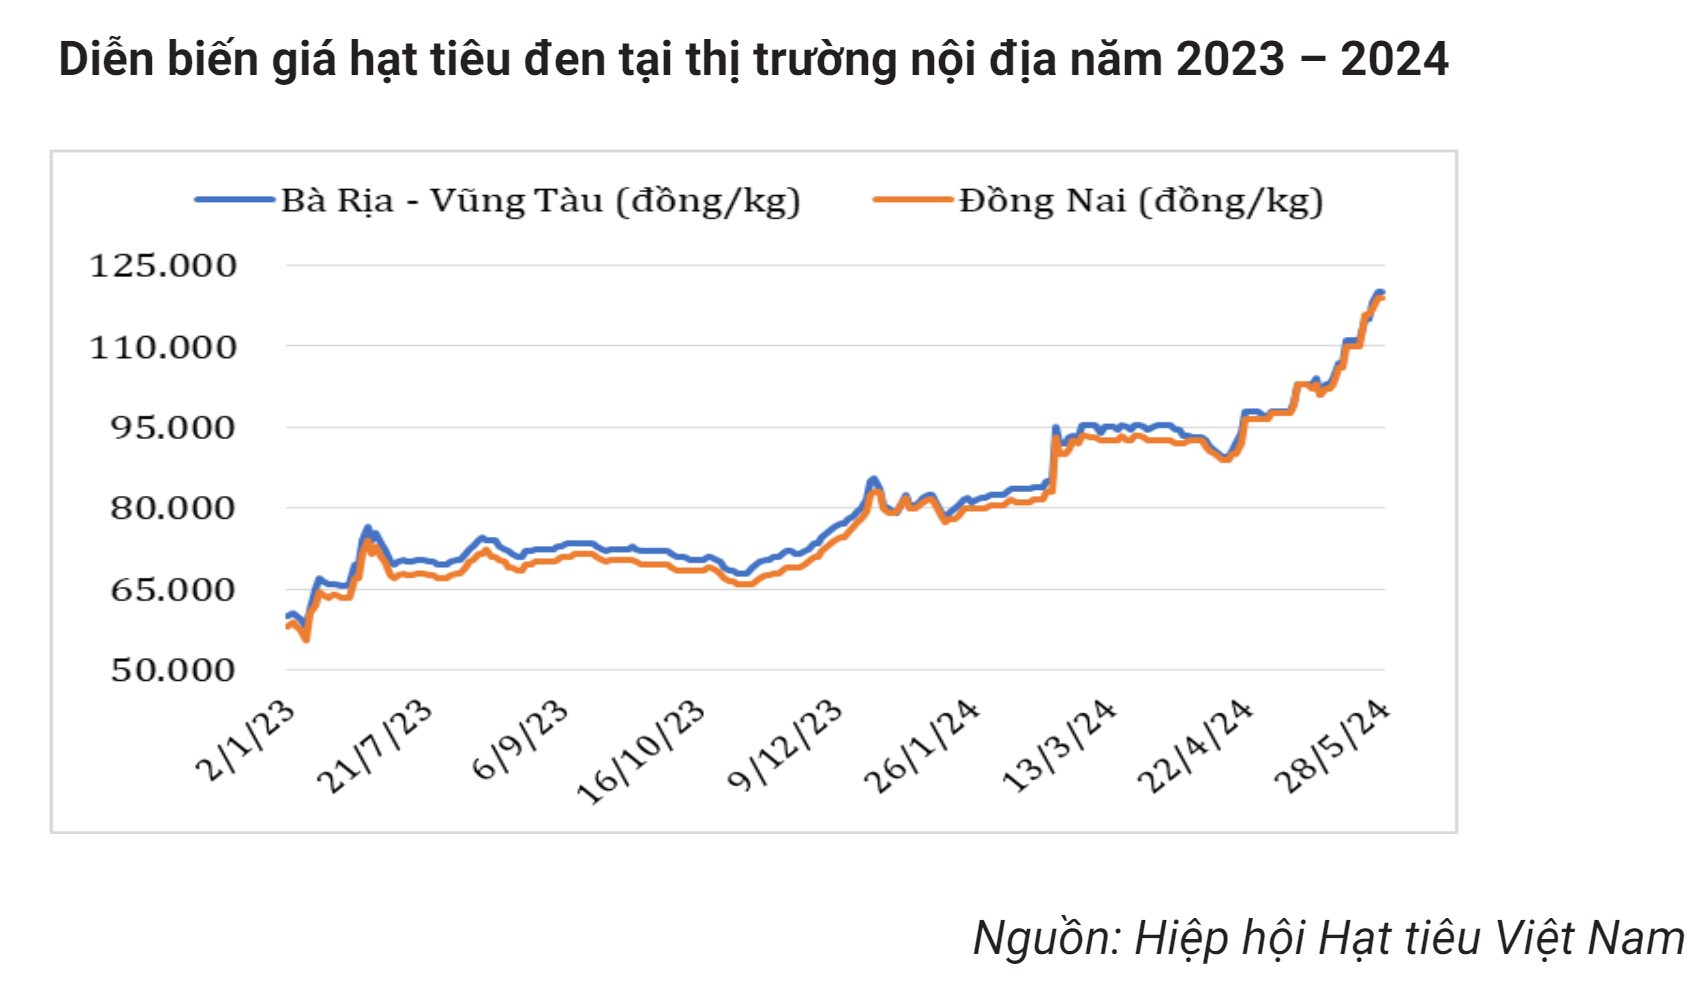 Giá liên tục phá đỉnh, 'vàng đen' của Việt Nam trở thành mặt hàng hot được nhiều nước săn lùng, dễ dàng cán đích xuất khẩu 1 tỷ USD- Ảnh 3.